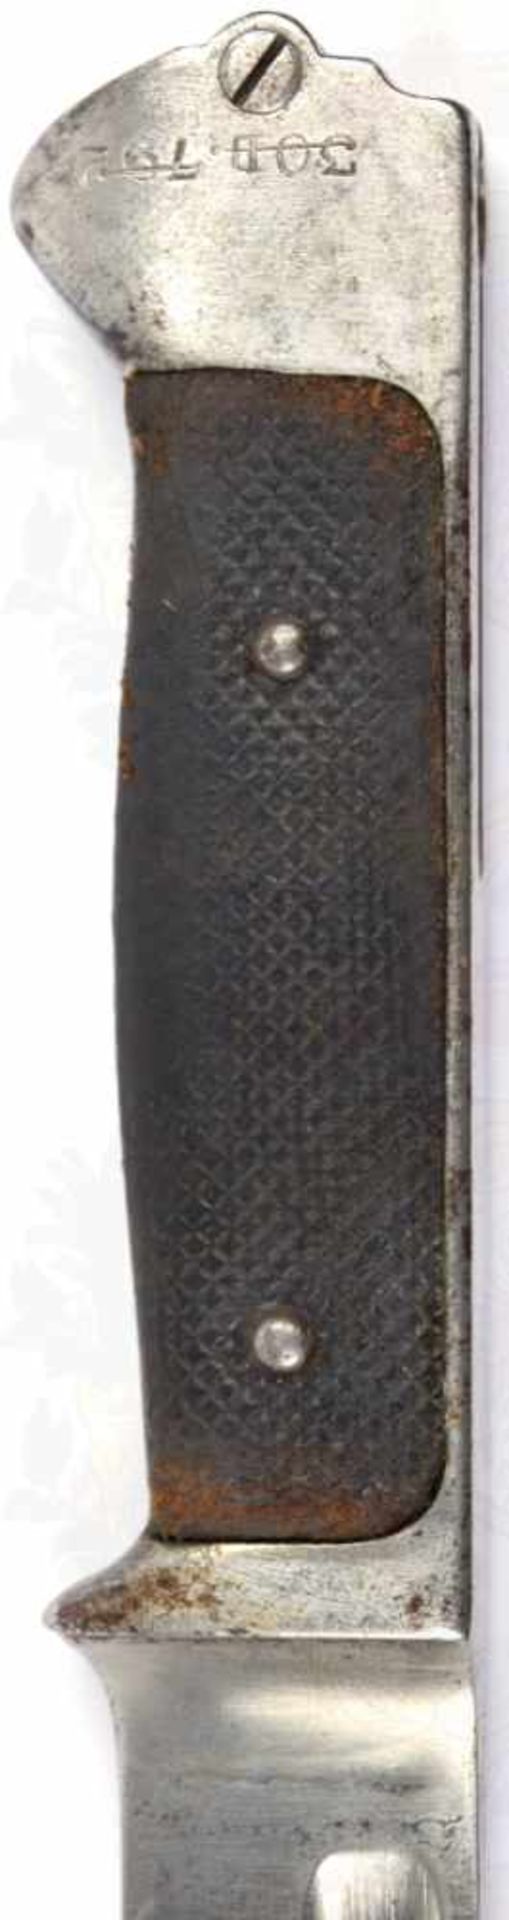 MESSERBAJONETT KRAG-JÖRGENSEN 1889, Klinge m. Dt. Herst. „W.K&.C.“, L. 23,5cm, schwarze geriffelte - Bild 3 aus 5